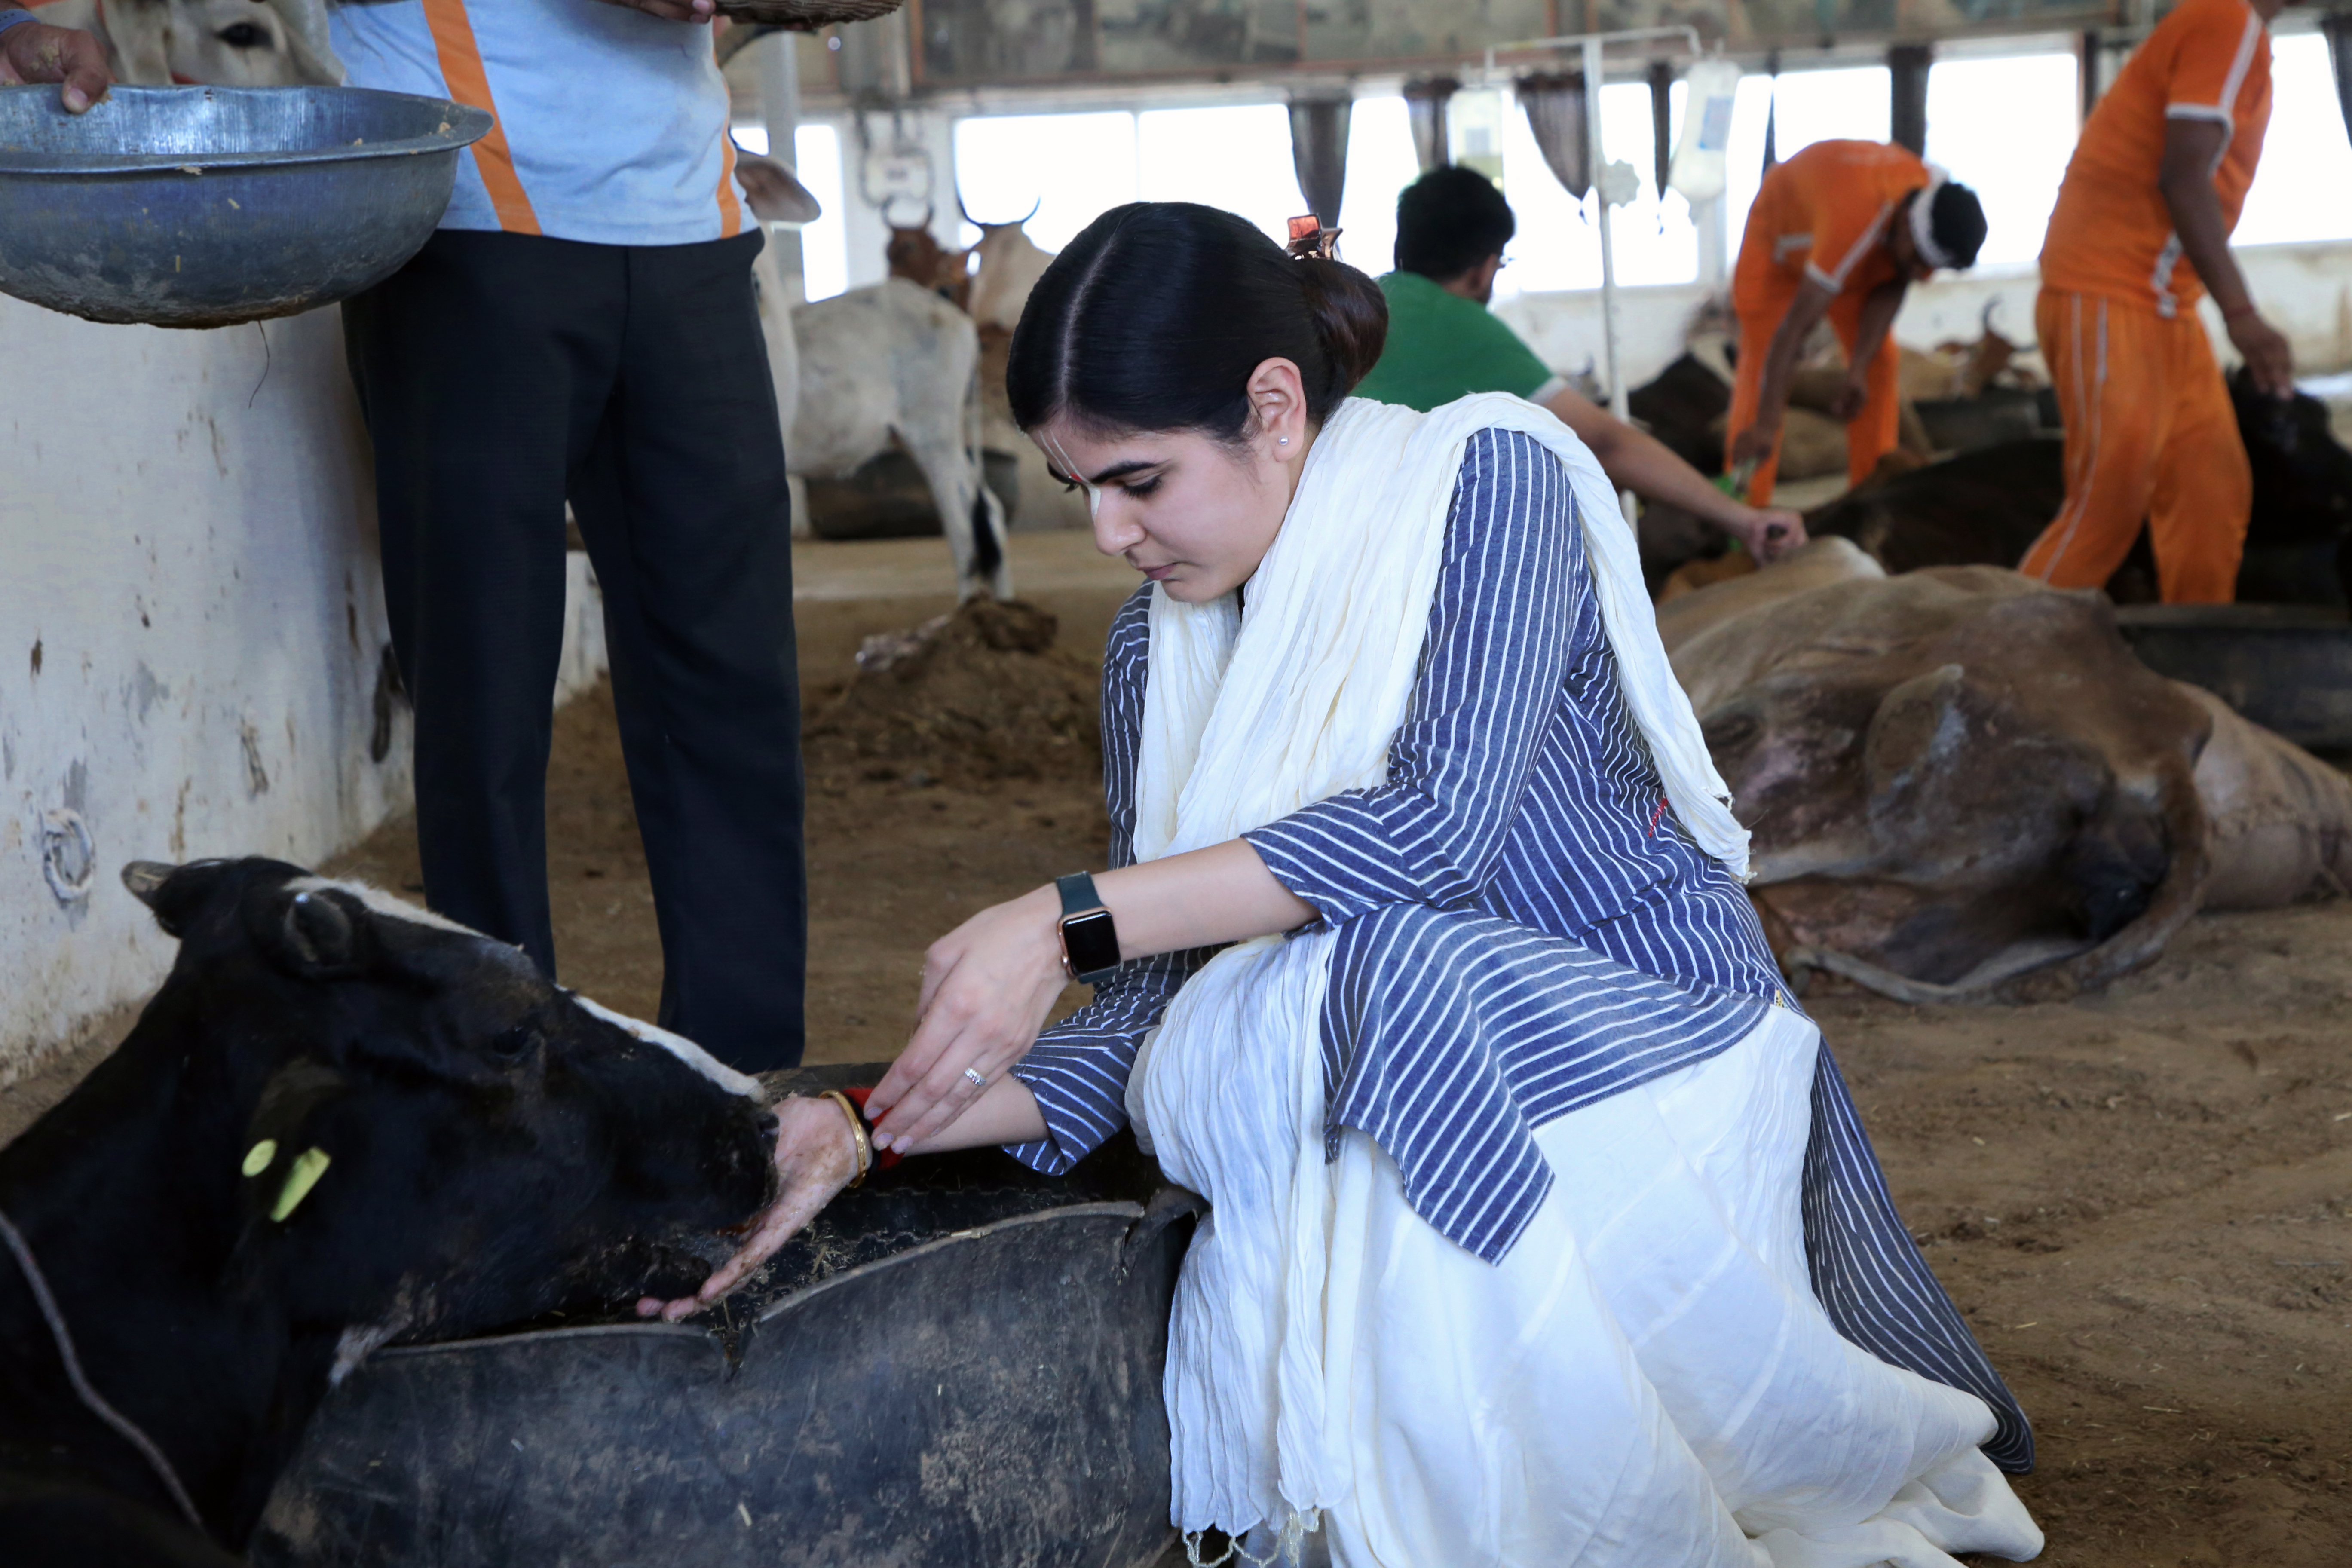 धूमधाम से मनाया गया परशुराम जन्मोत्सव तथा अक्षय तृतीया का पर्व, गौ सेवा धाम ने बीमार गायों हेतु किया विशाल छप्पन भोग का आयोजन